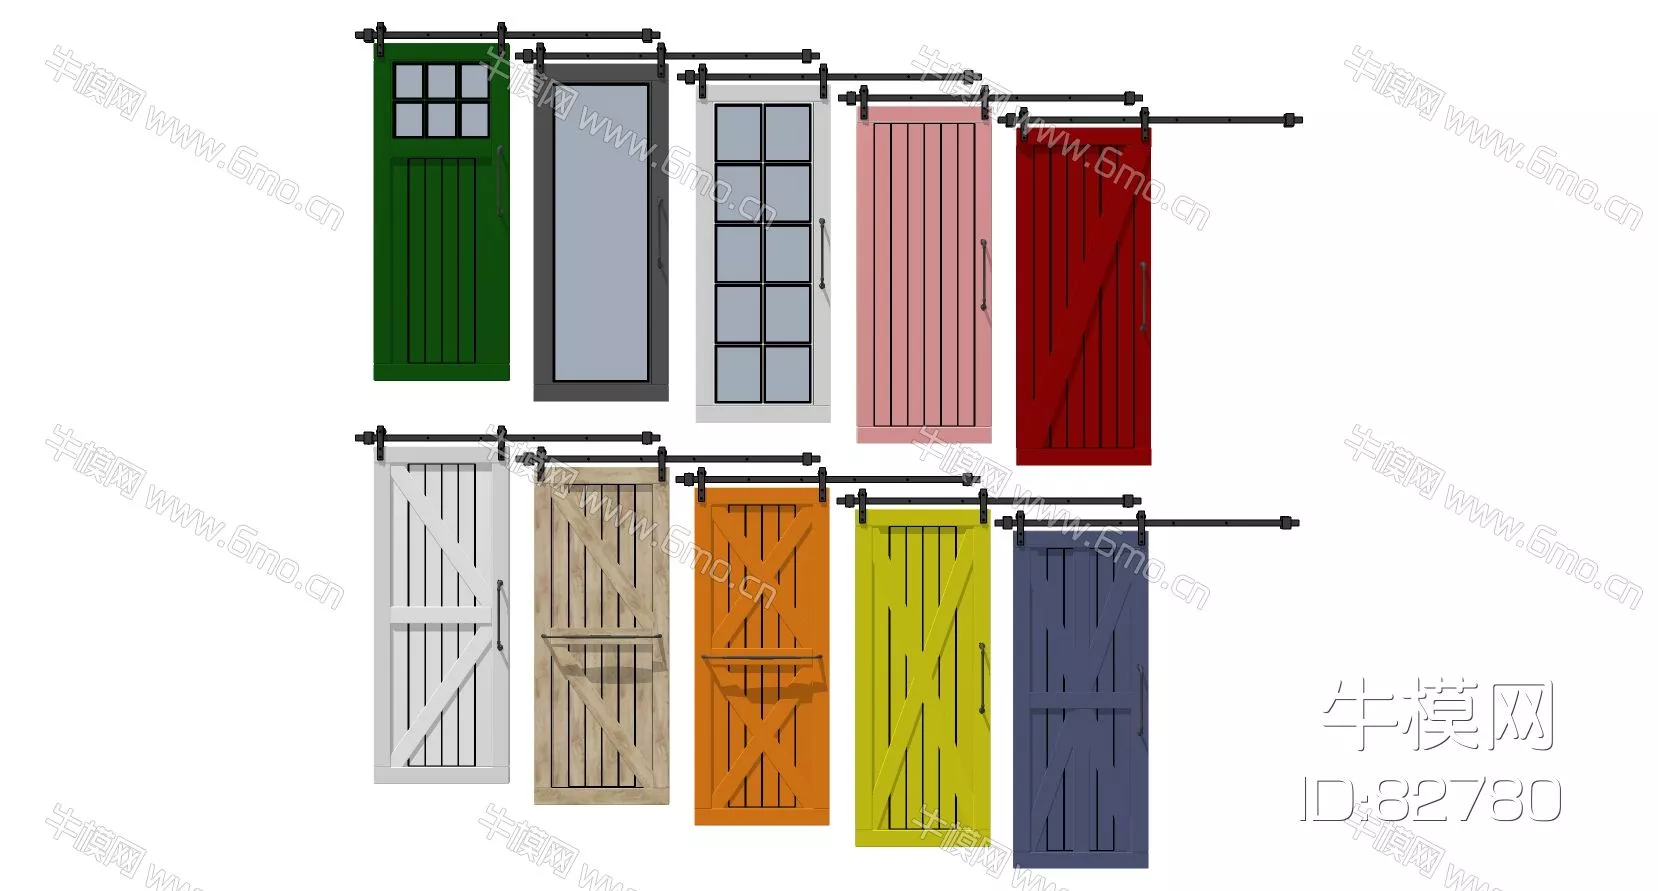 INDUSTRIAL DOOR AND WINDOWS - SKETCHUP 3D MODEL - ENSCAPE - 82780